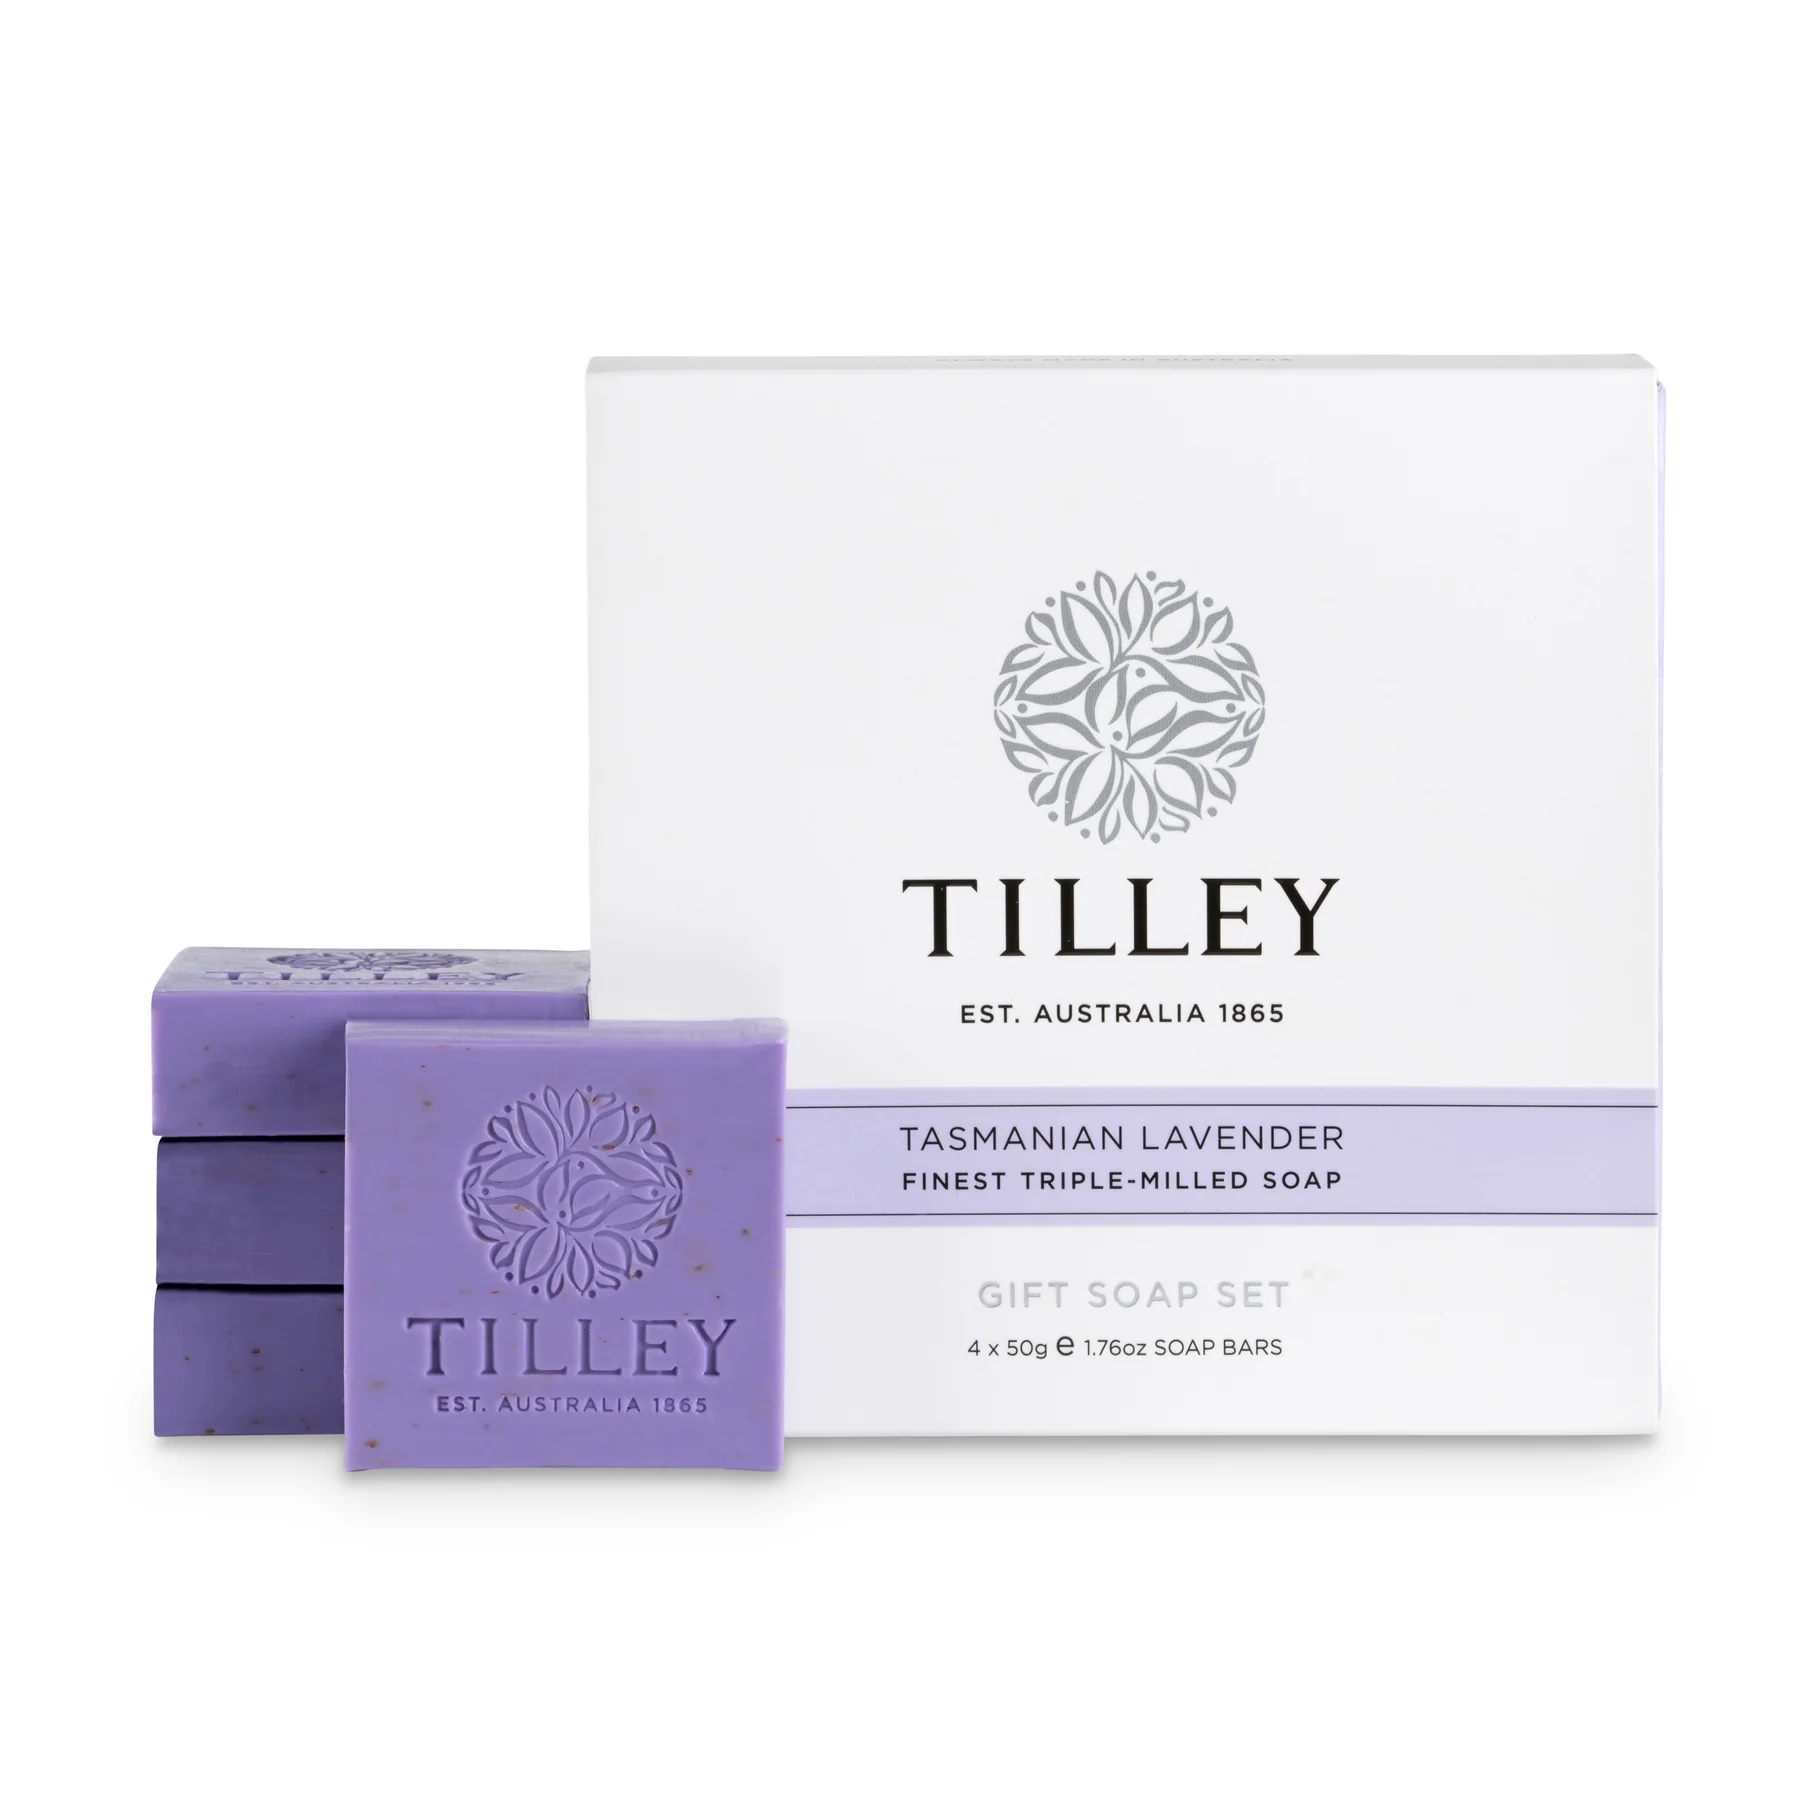 Tilley Gift Soap Set Tasmanian Lavender 4 x 50g